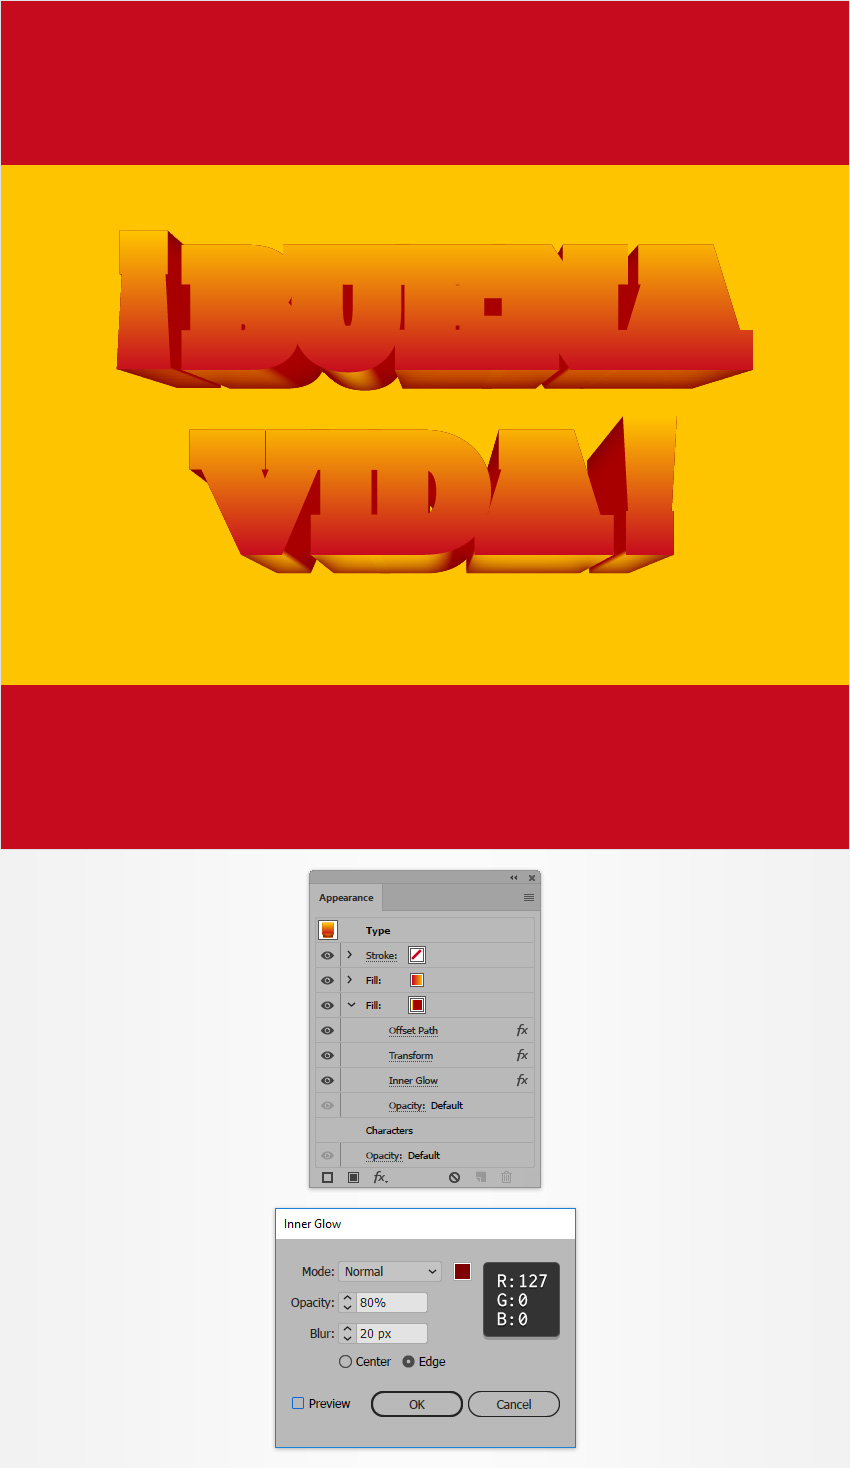 Cách tạo hiệu ứng chữ kiểu Tây Ban Nha trong Adobe Illustrator